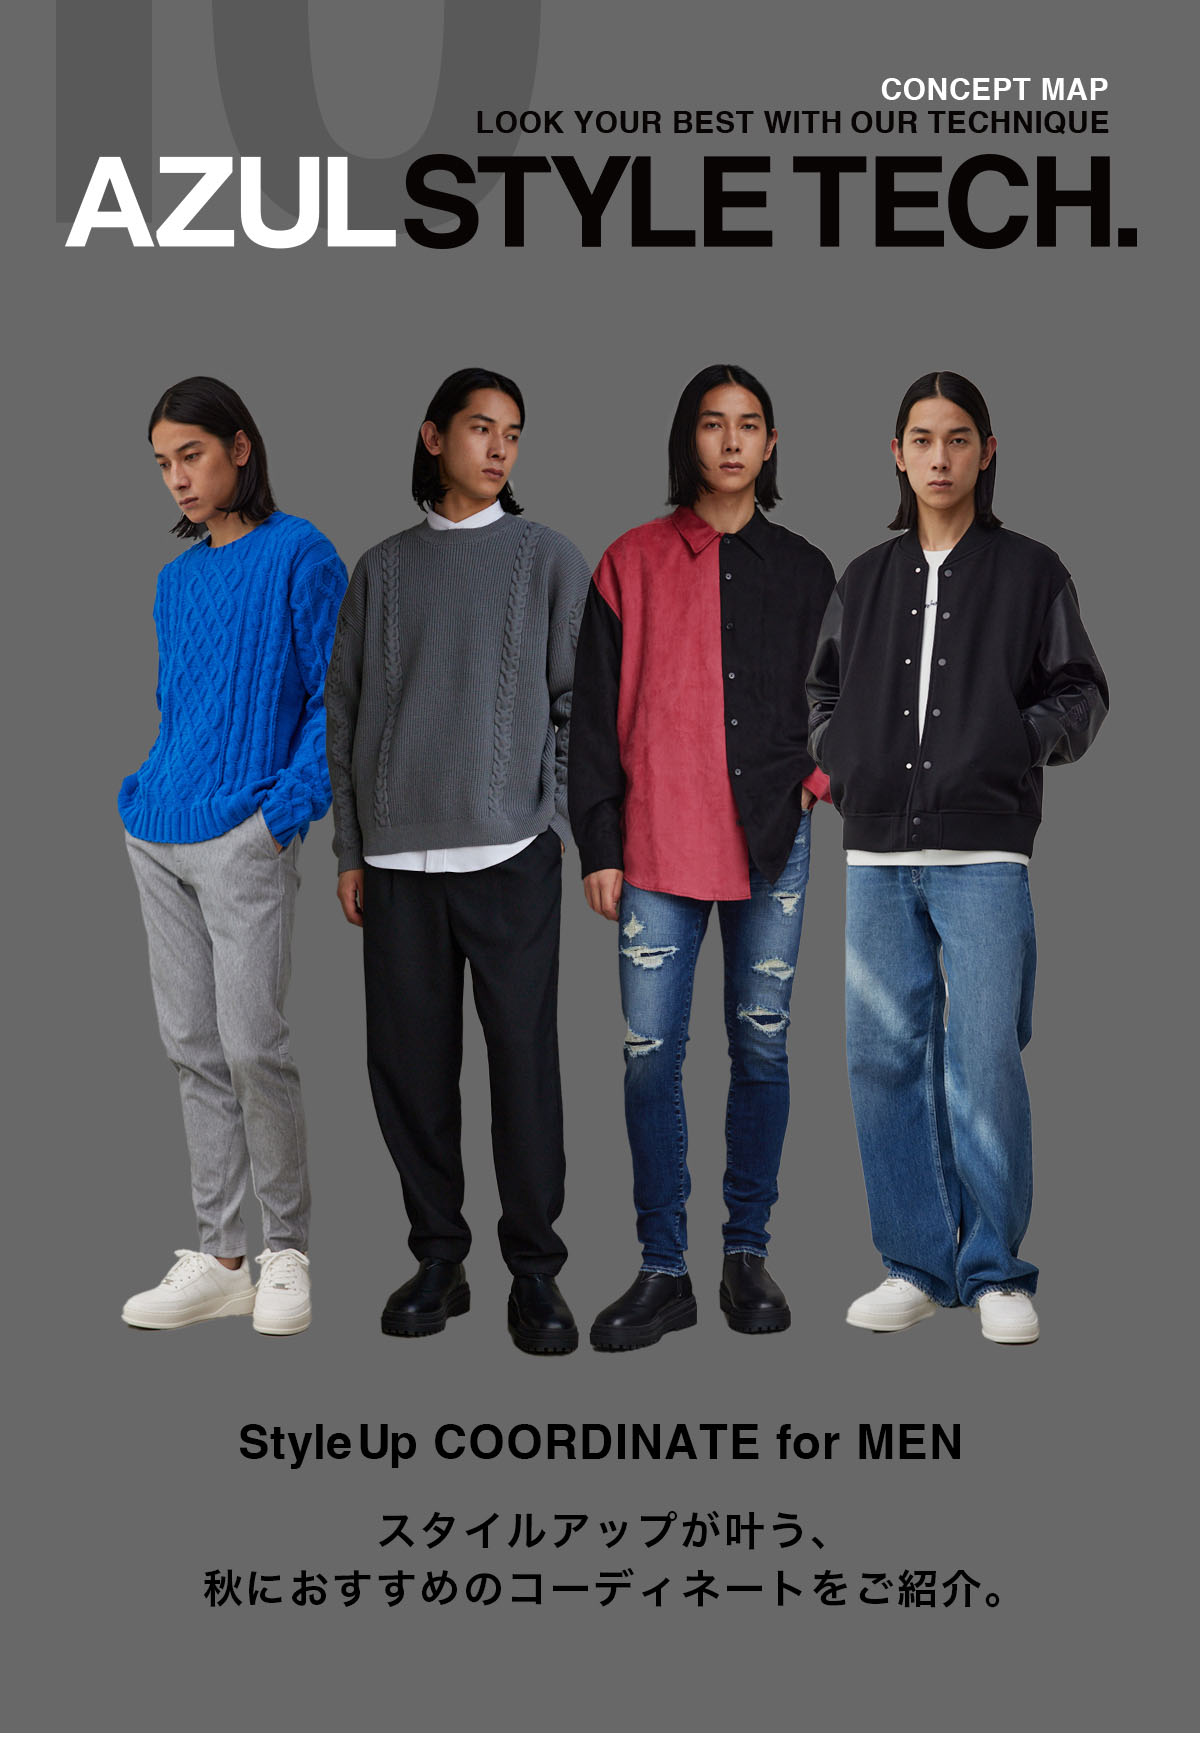 StyleUp COORDINATE for MEN スタイルアップが叶う、秋におすすめのMENコーディネートをご紹介。